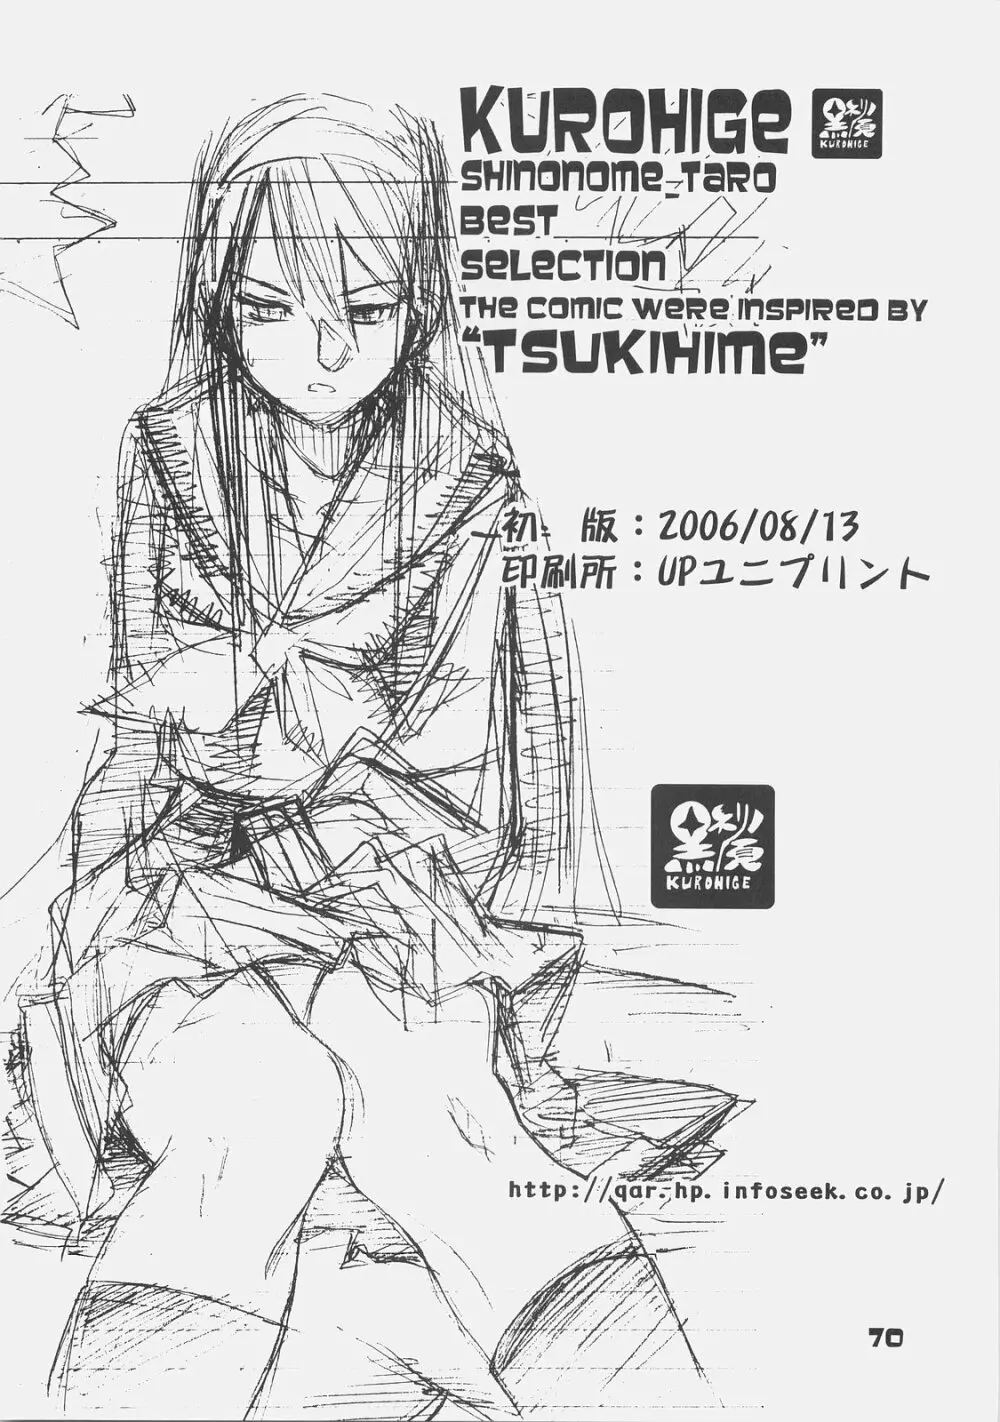 KUROHIGE SHINONOME_TaRO BEST SELECTION “TSUKIHIME” 69ページ